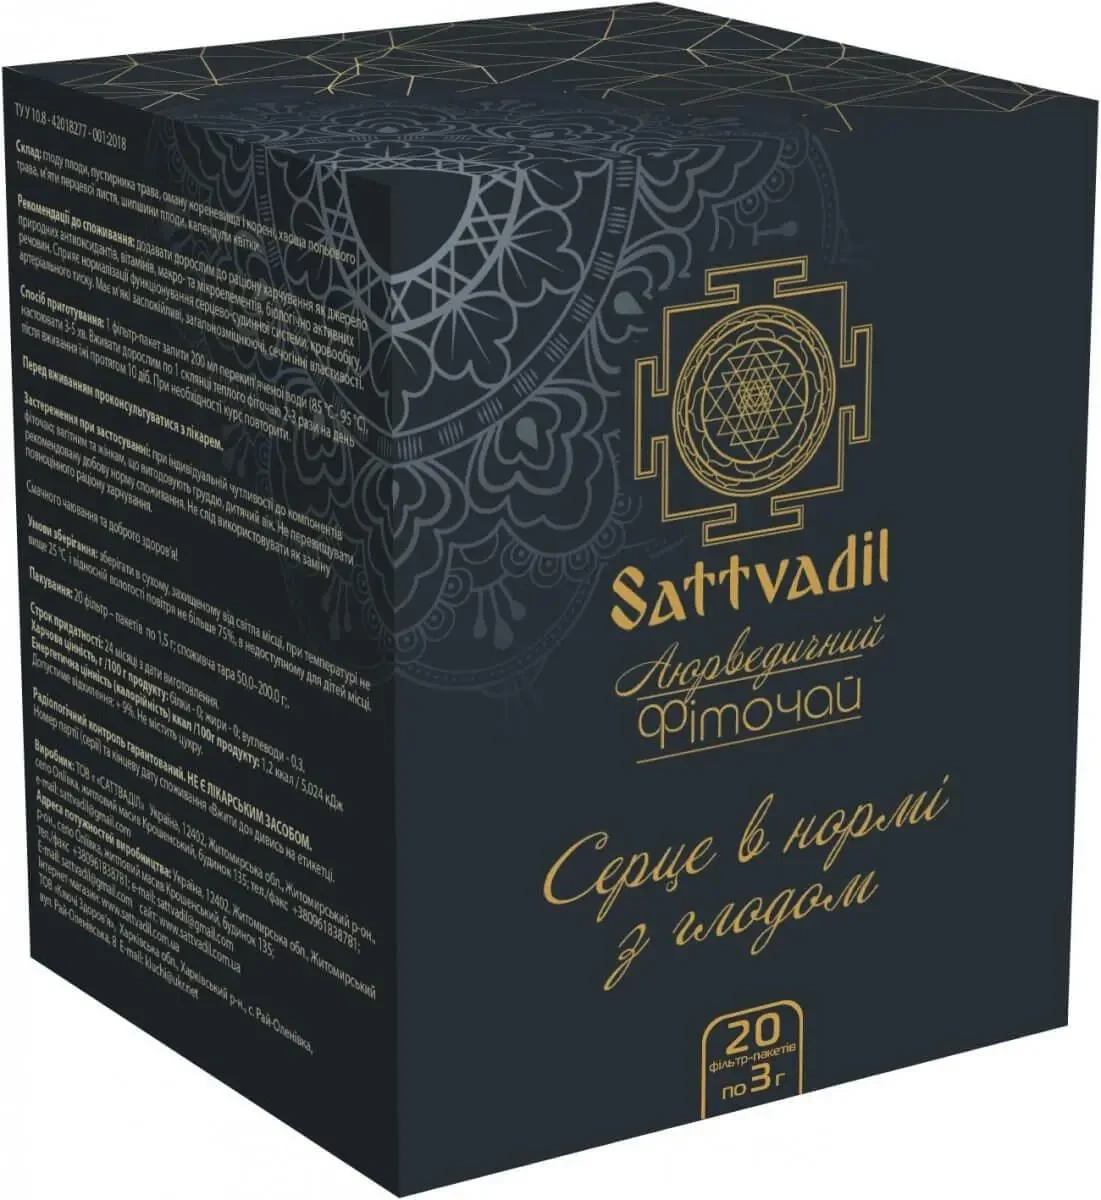 Трав'яний аюрведичний фіто-чай в пакетиках 20 шт ТМ Sattvadil Лімфа в нормі з чагою